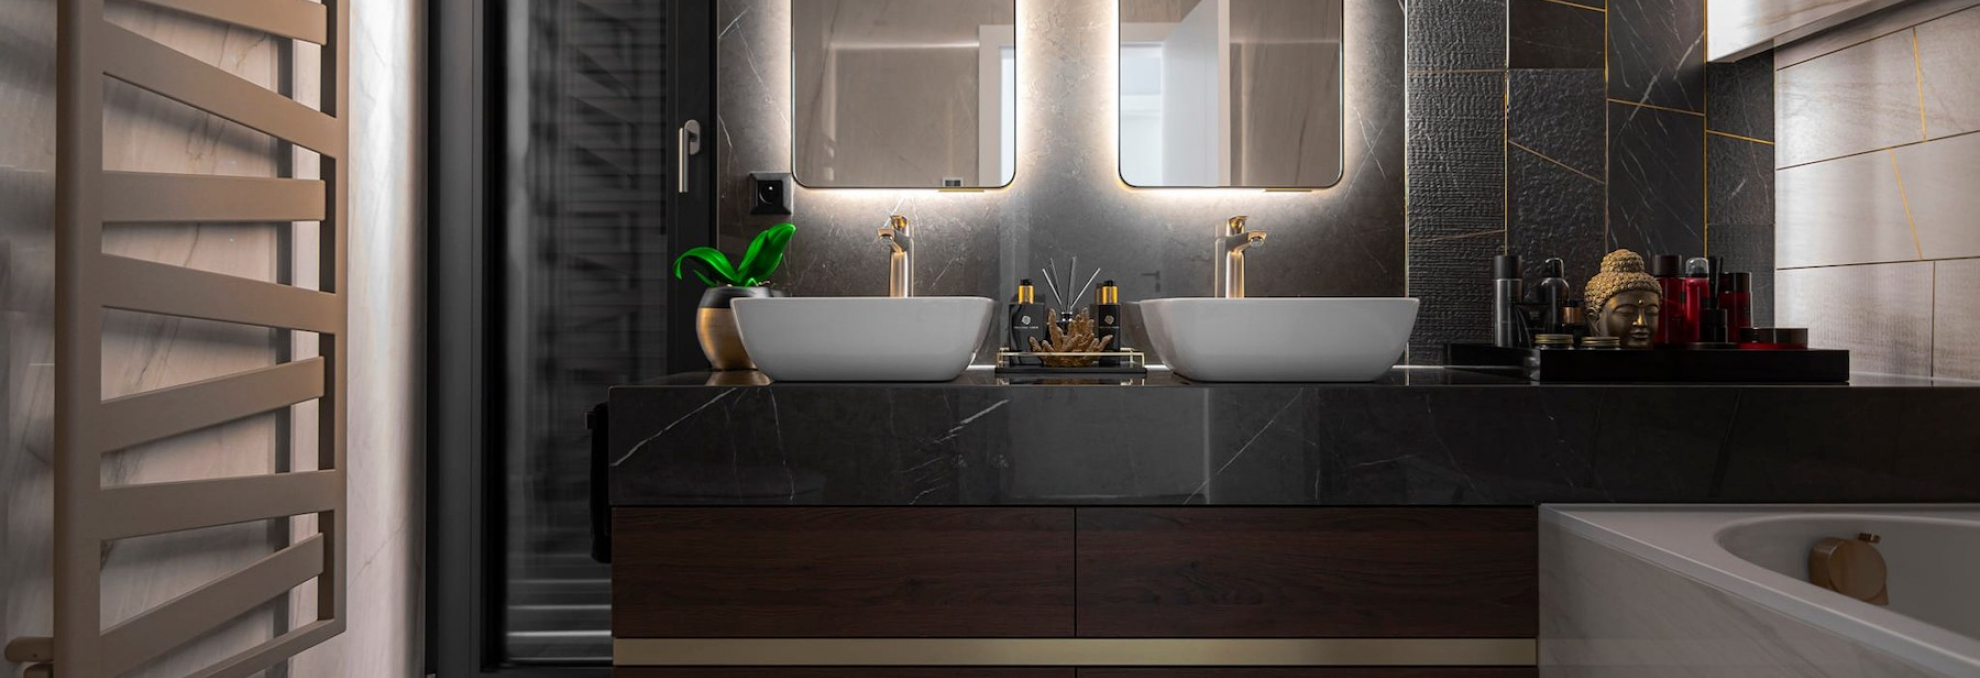 Realizace koupelny z keramické dlažby Lux Experience